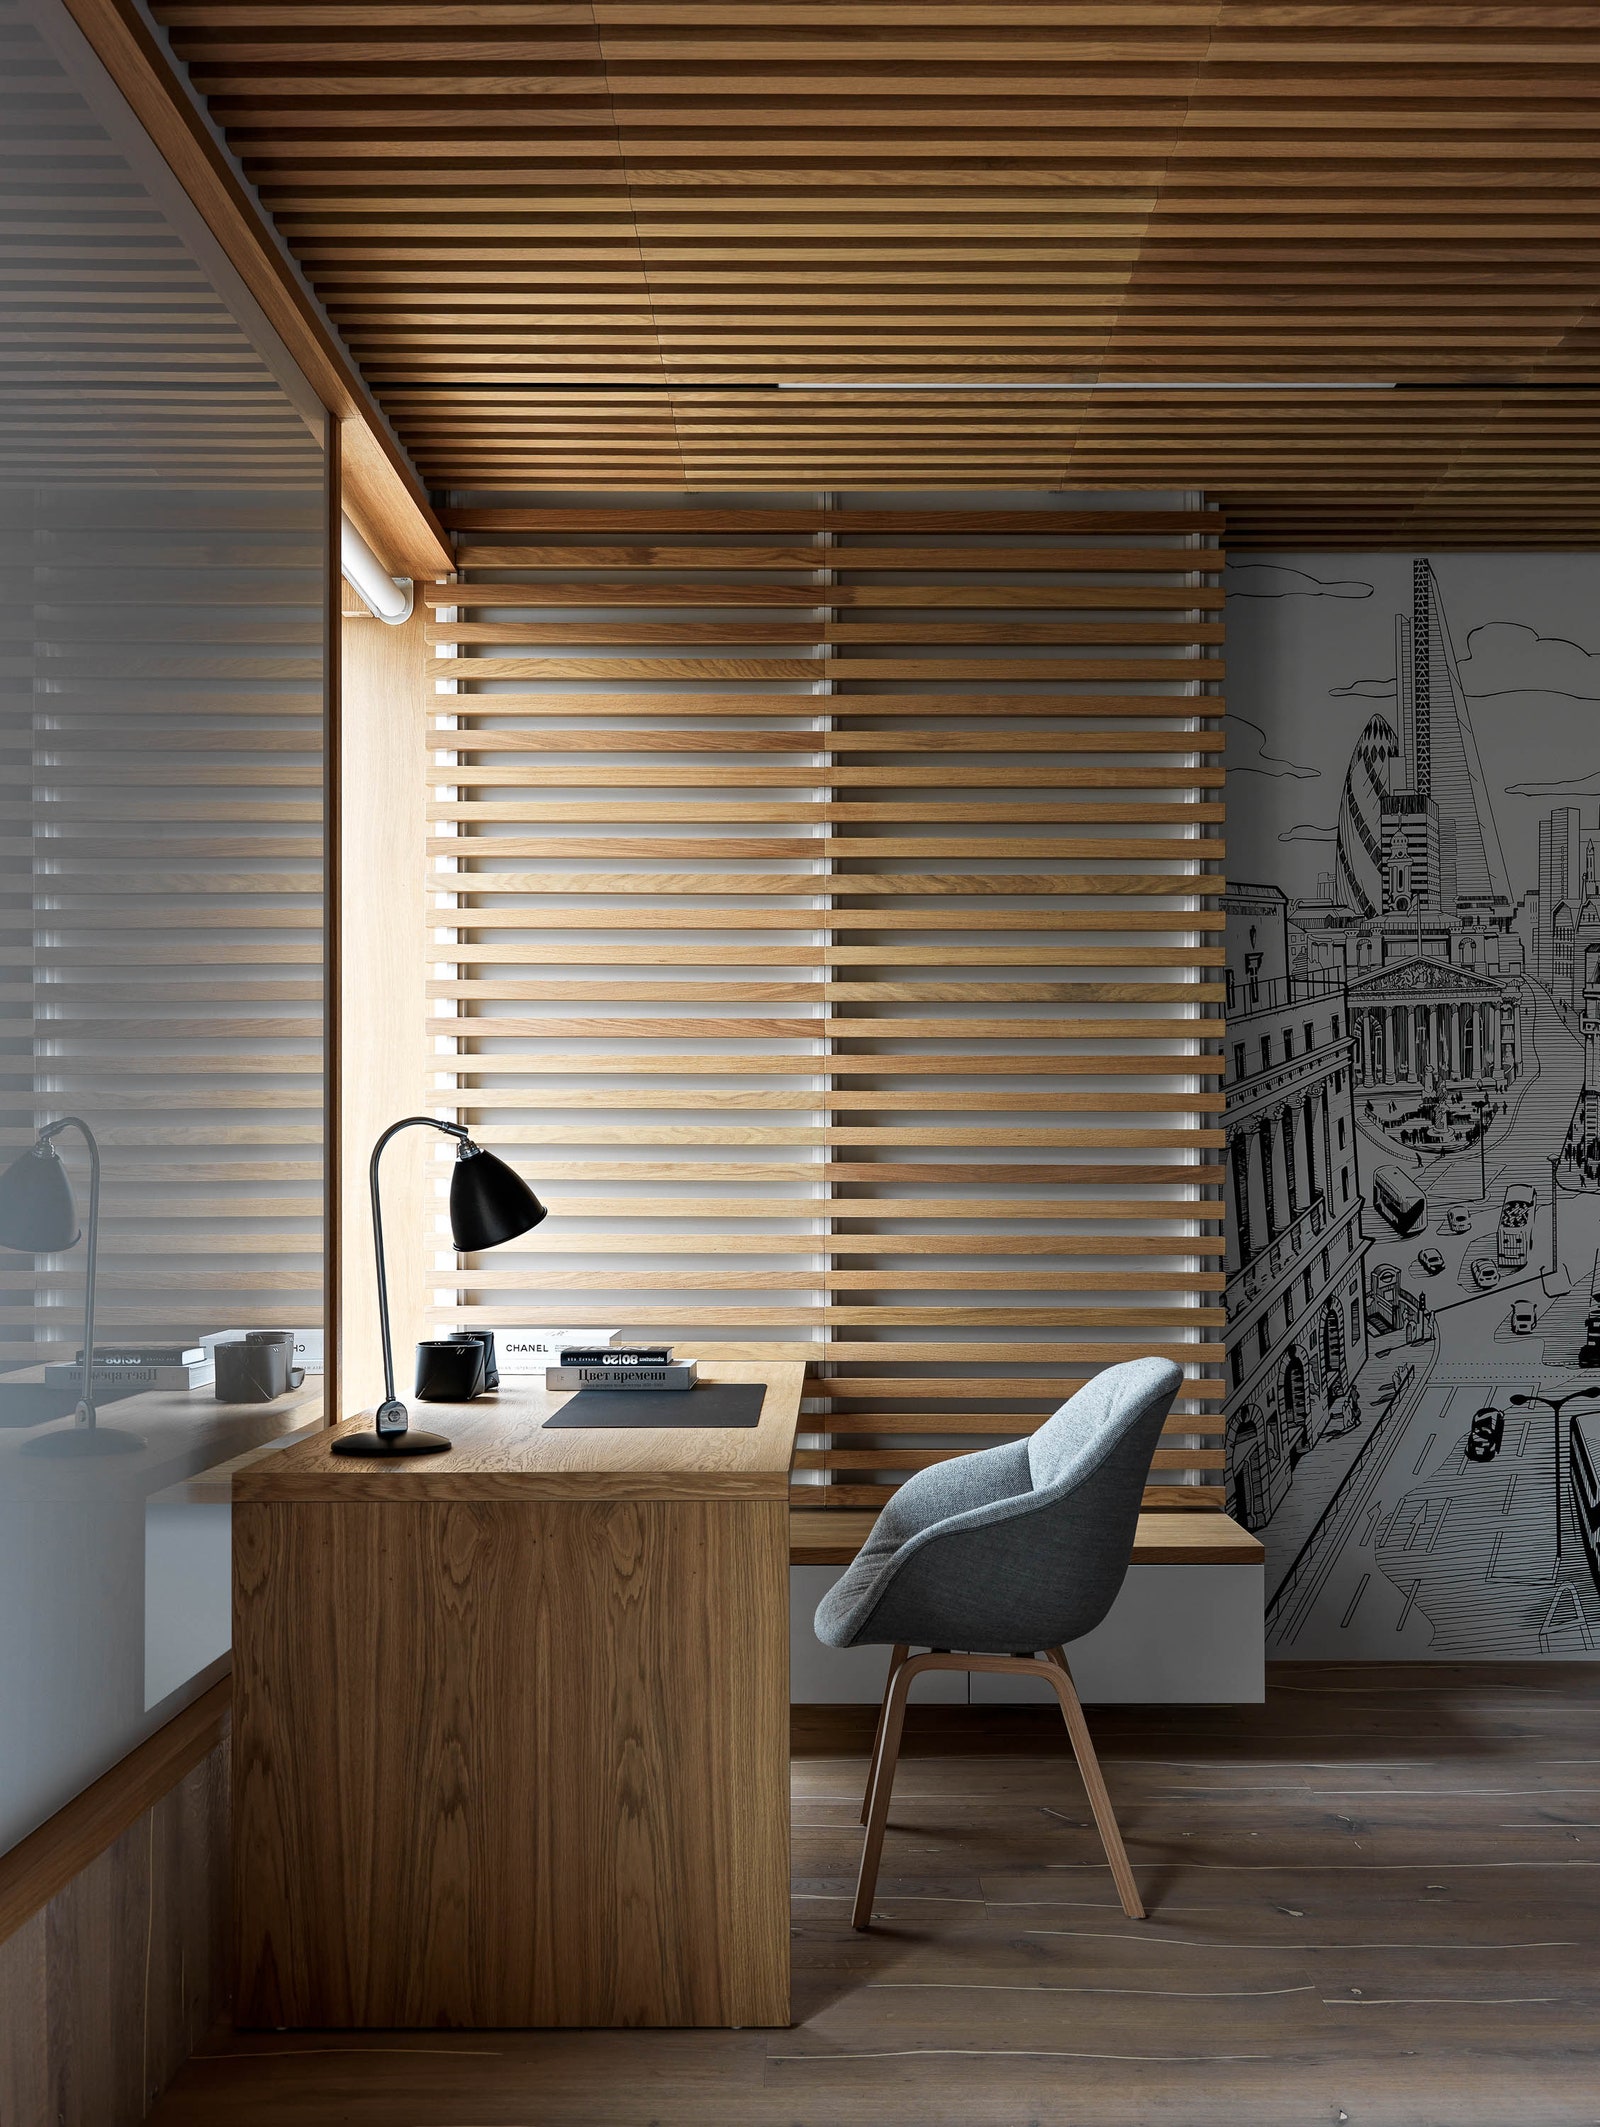 Гостевая комната в санктпетербургской квартире по дизайну Ксении Ивановой.